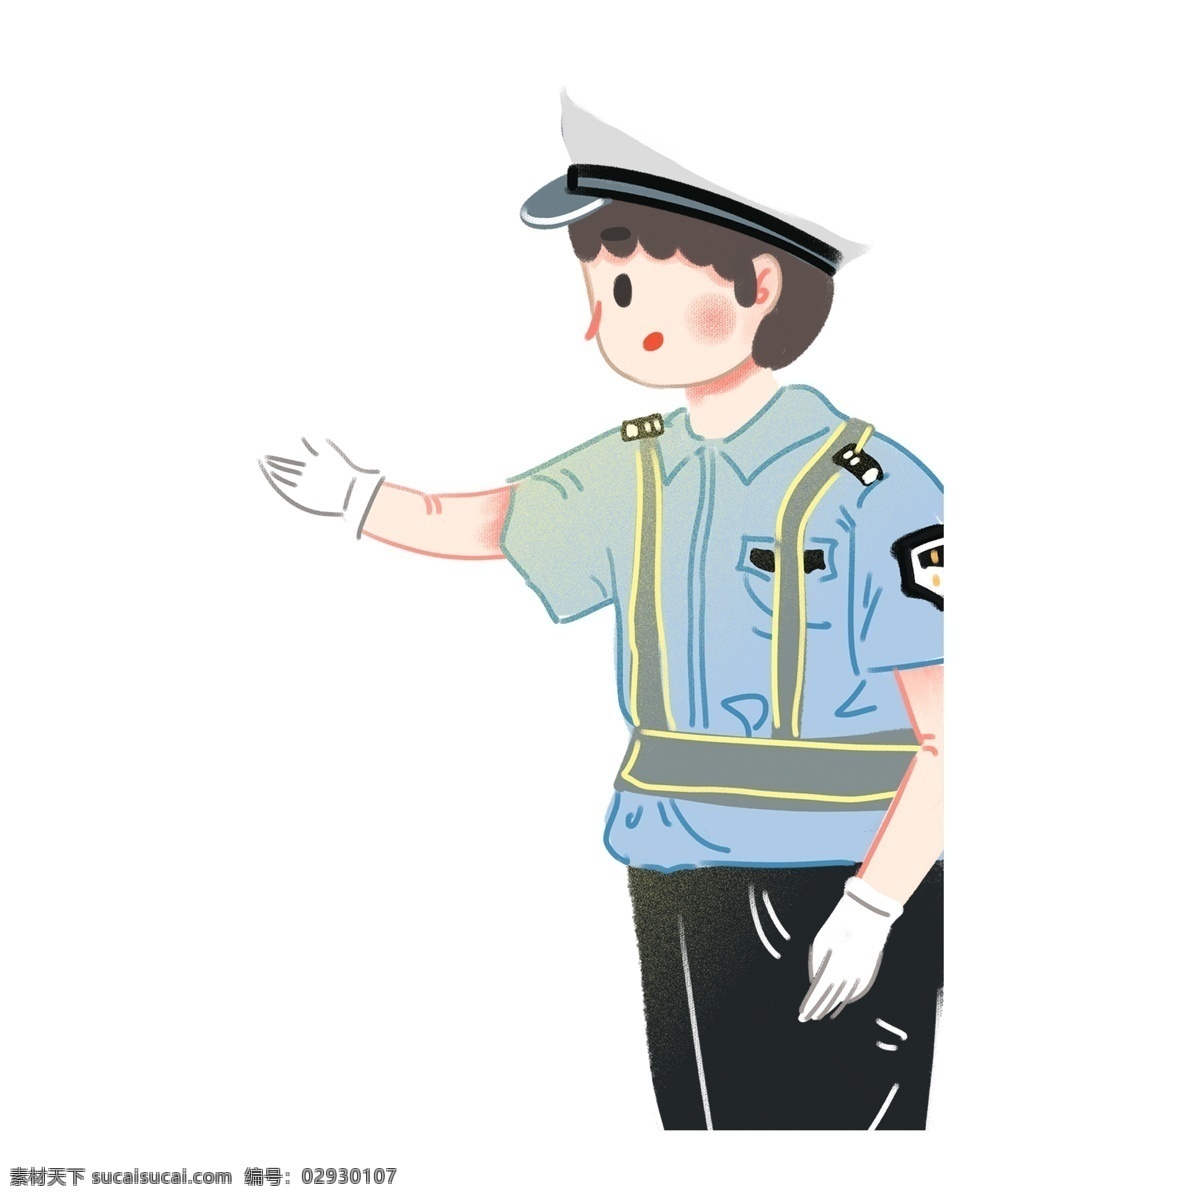 卡通 简约 警察 叔叔 装饰 警察叔叔 插画元素 免扣素材 人物